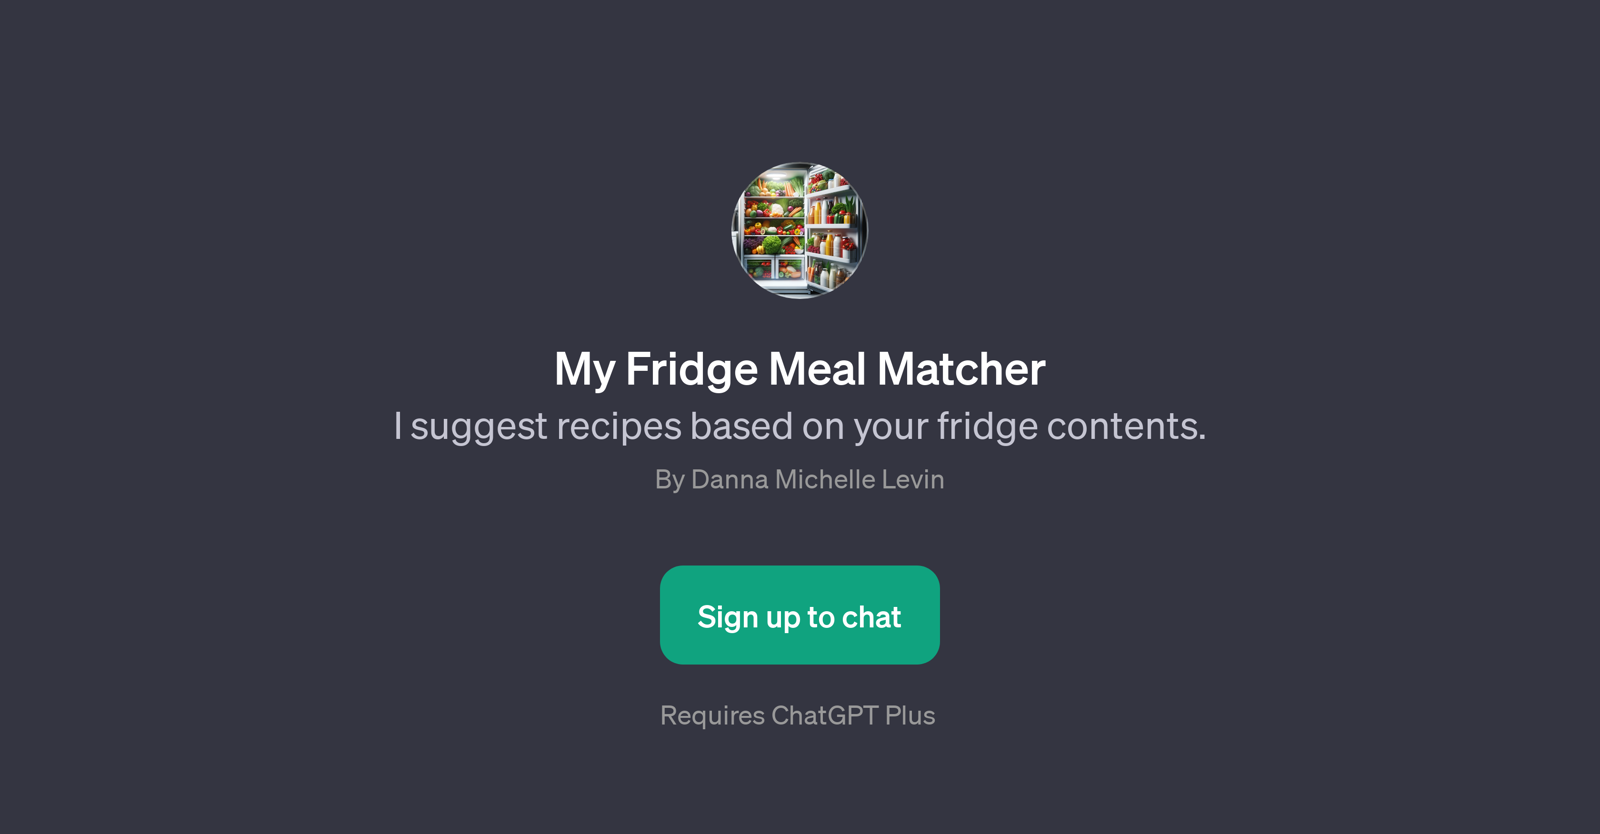 My Fridge Meal Matcher website